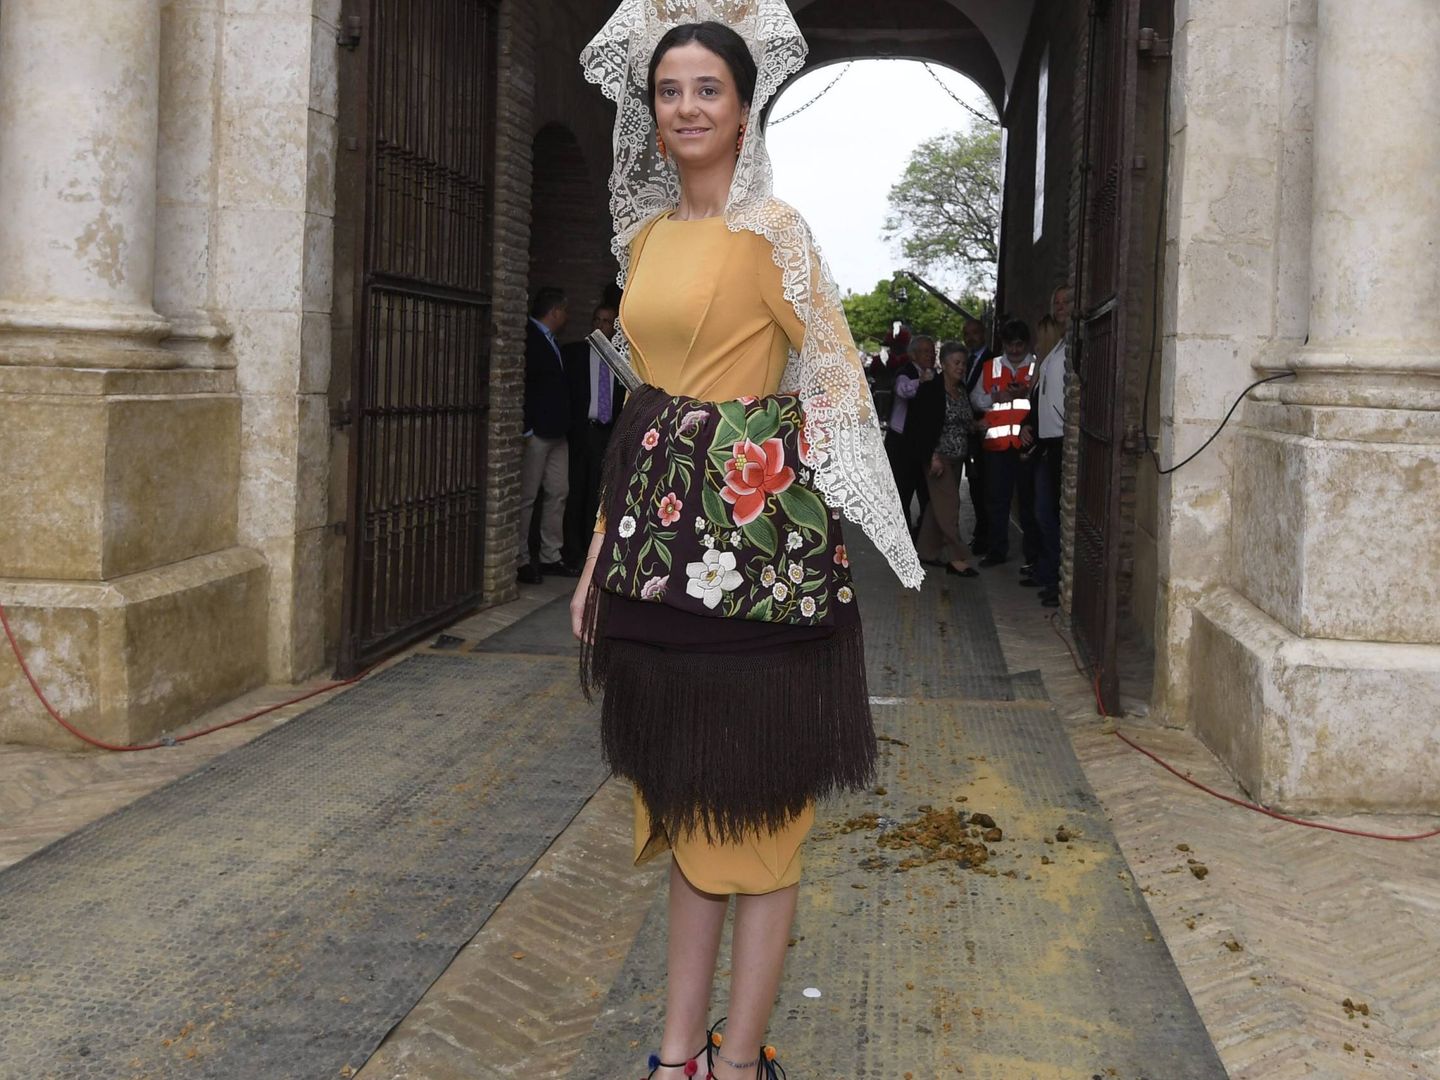  Victoria Federica, en la puerta de la Real Maestranza de Sevilla. (EFE)